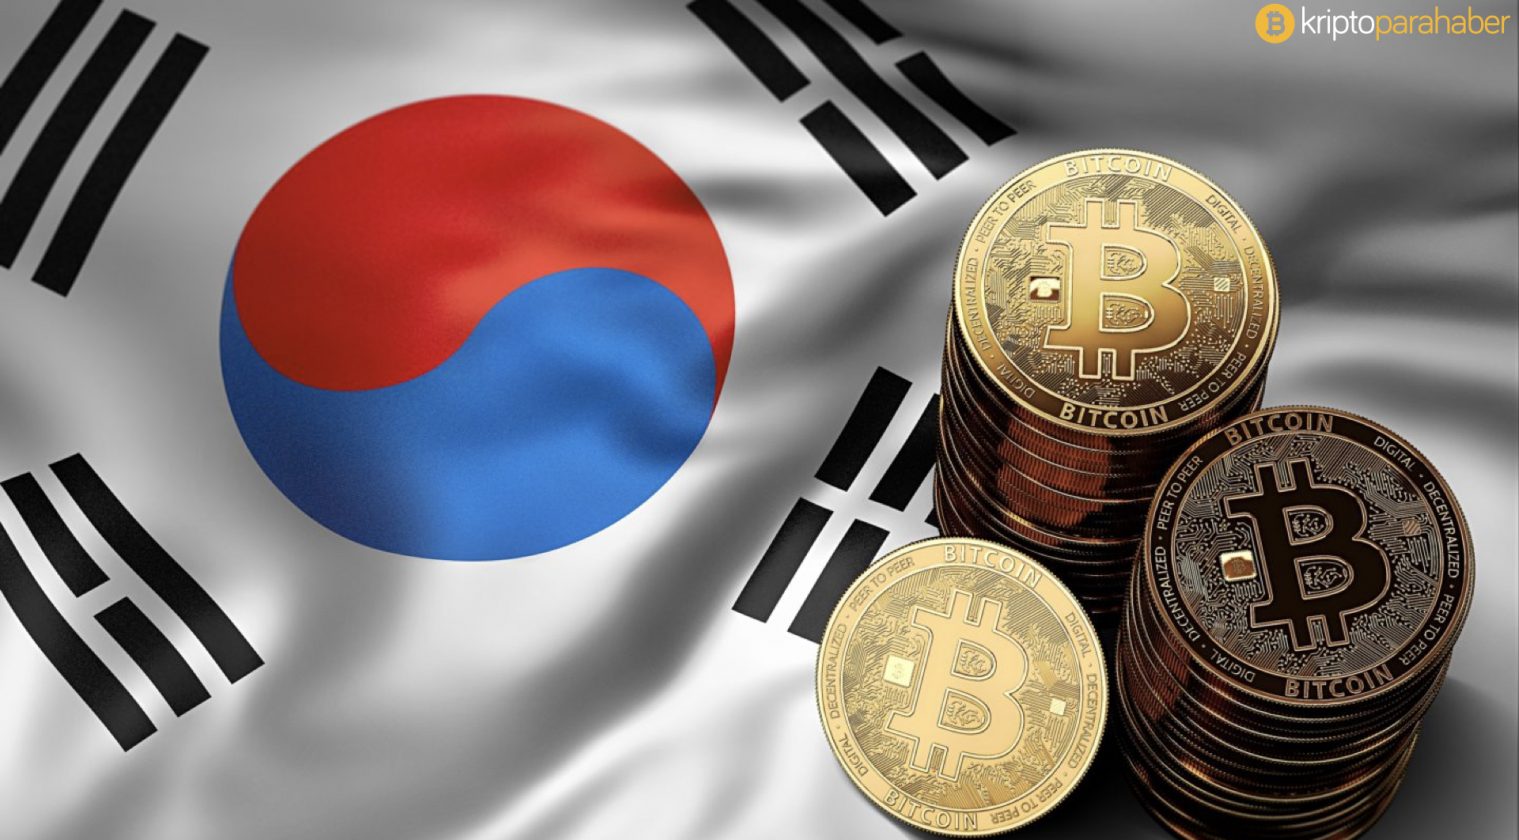 Güney Kore kripto para hakkında çarpıcı istatistikler sunuyor.